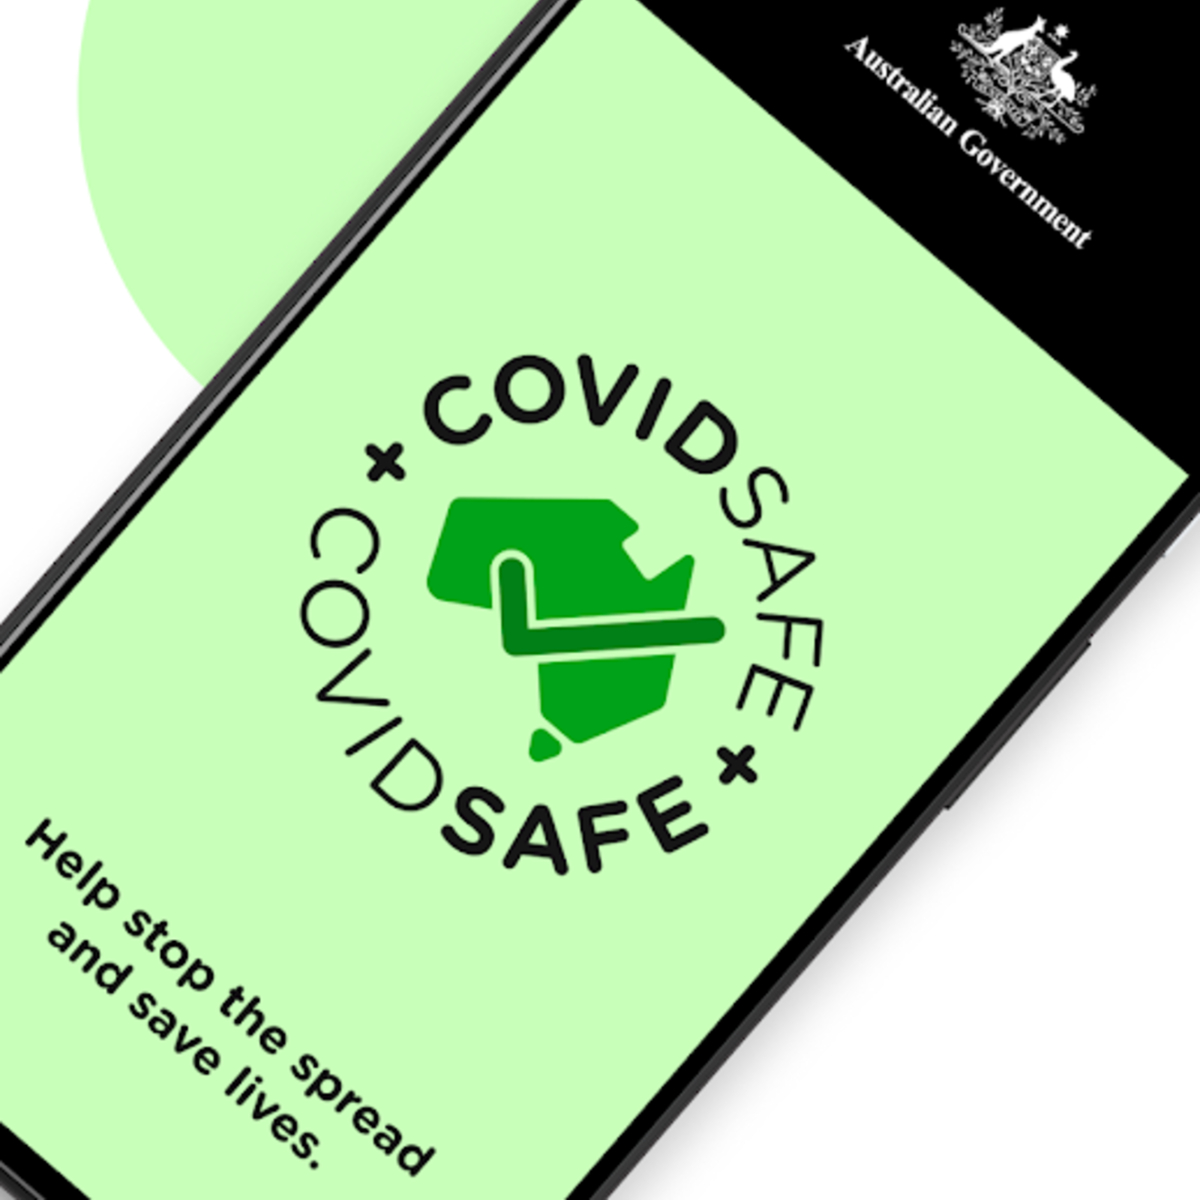 COVIDSafe, pendant australien de StopCovid, est un échec un mois après son lancement